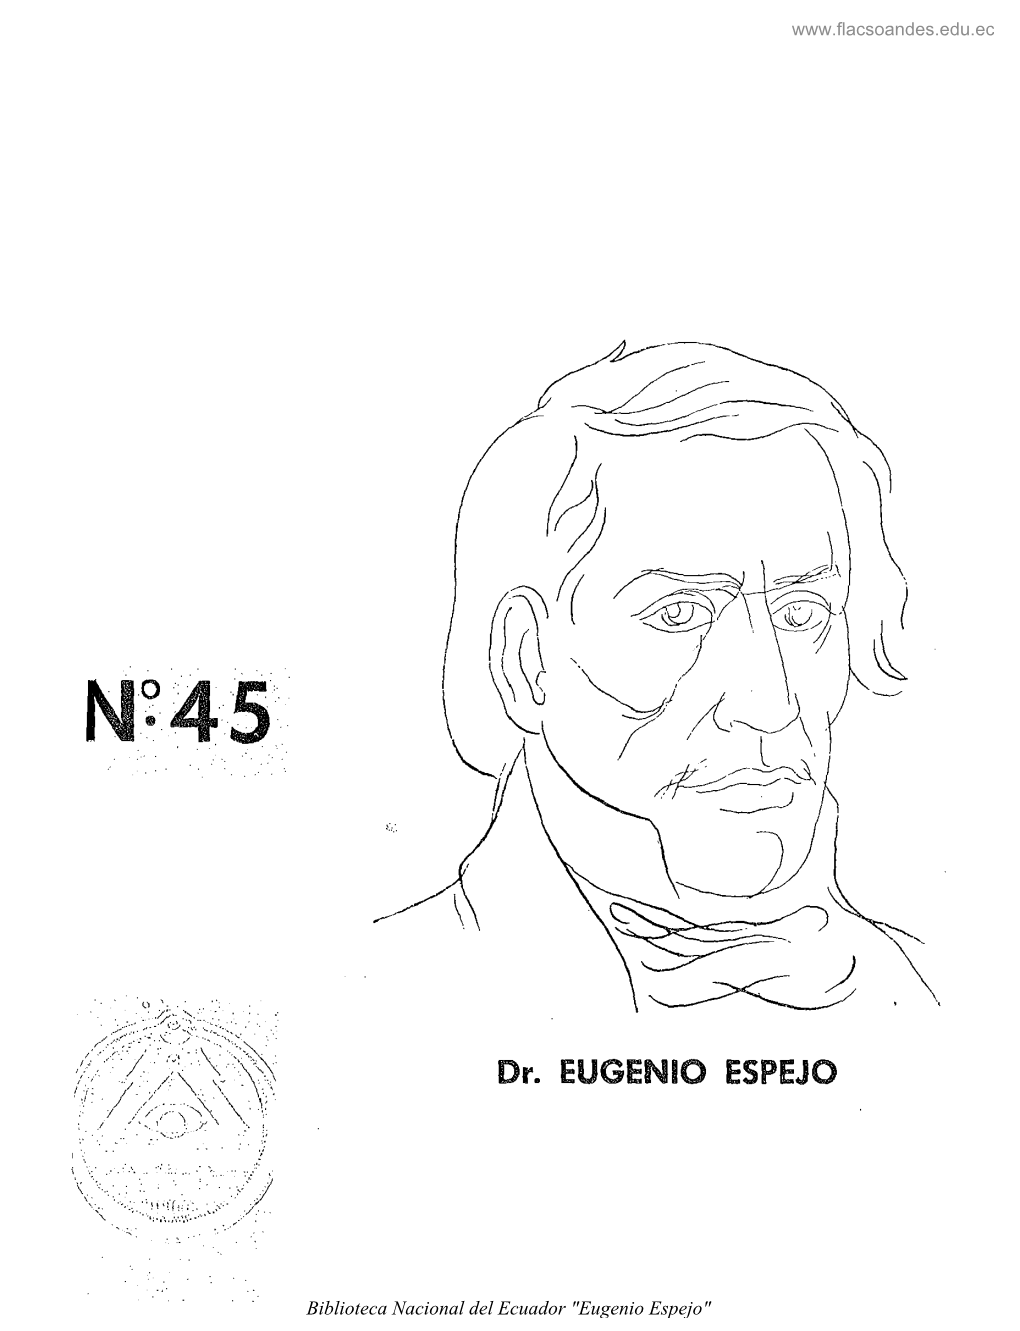 Dr. EUGENIO ESPEJO